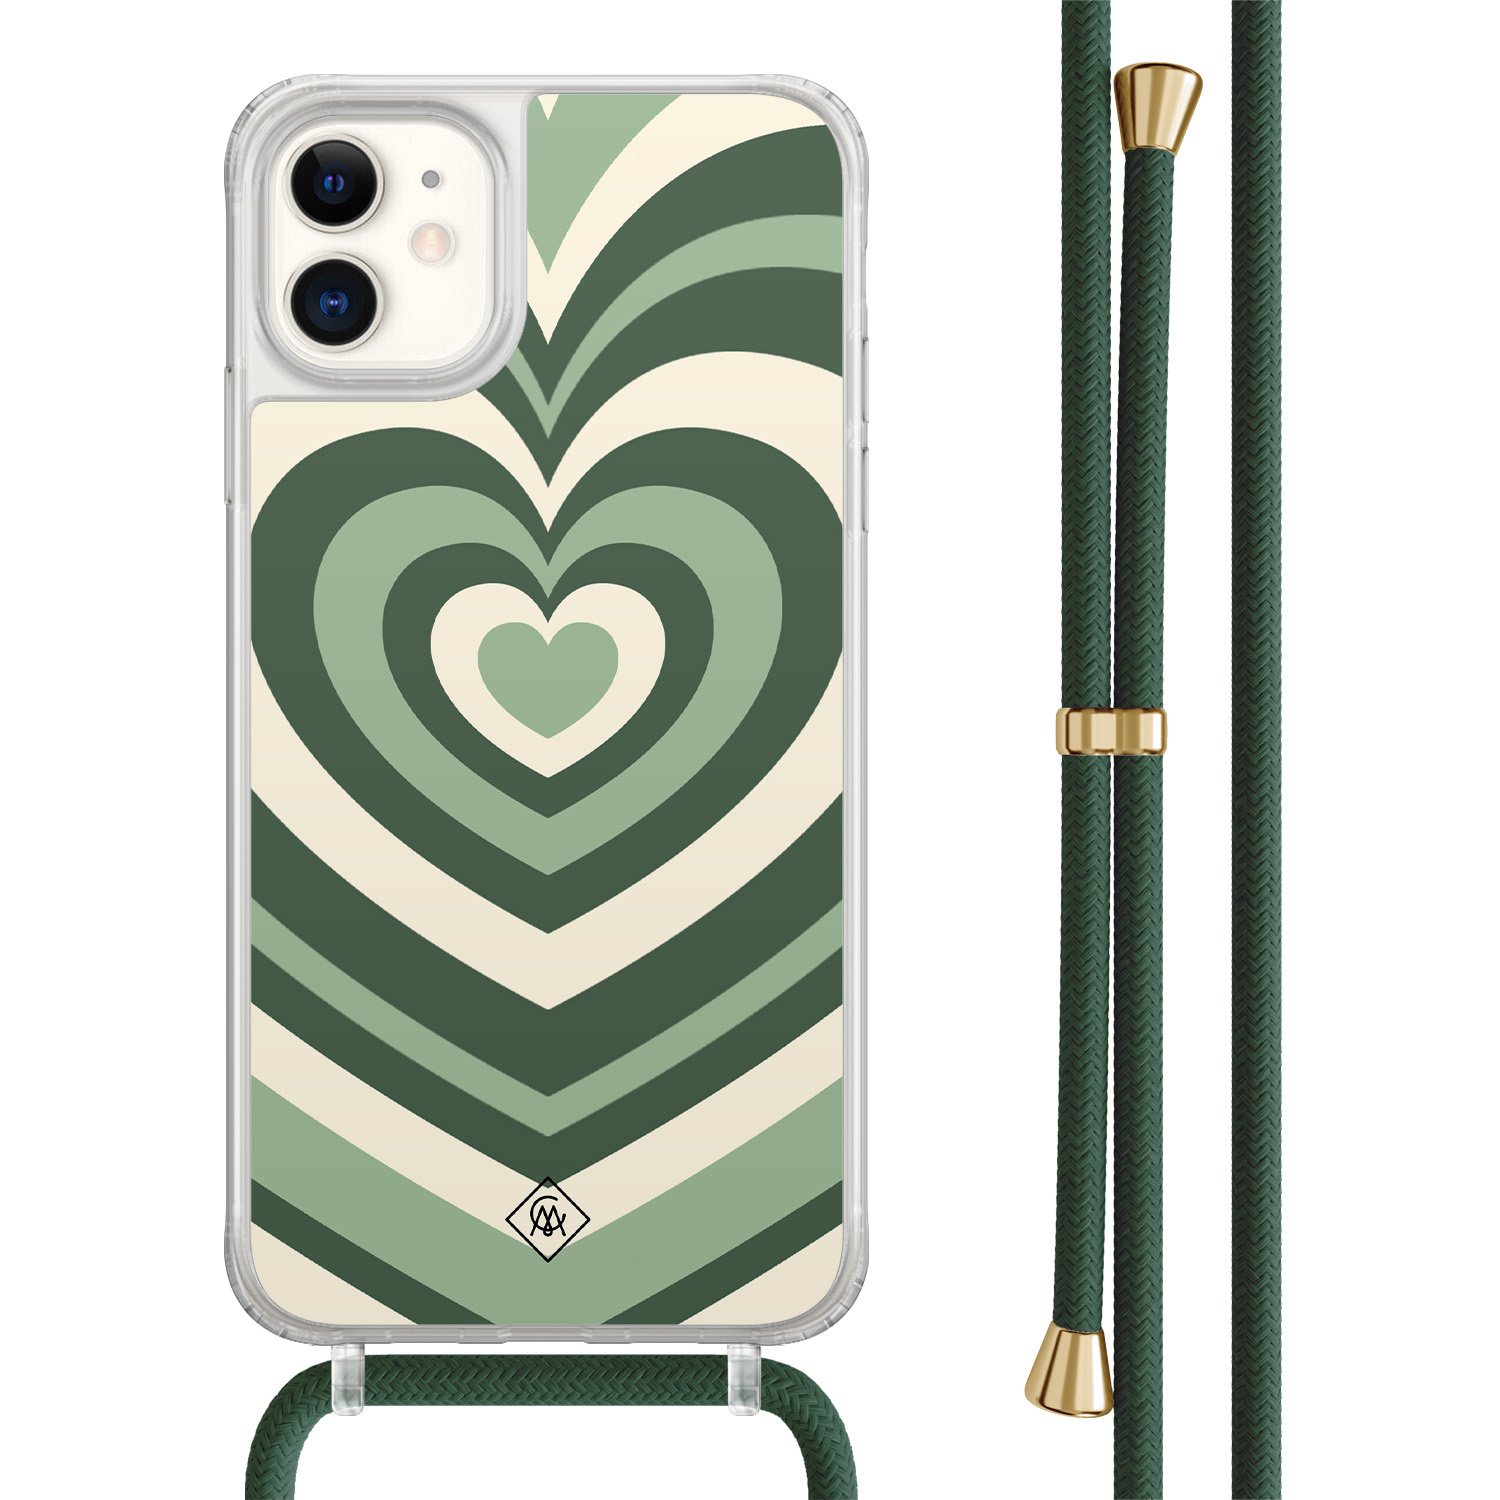 Casimoda® - iPhone 11 hoesje met groen koord - Hart swirl groen - Afneembaar koord - TPU/acryl